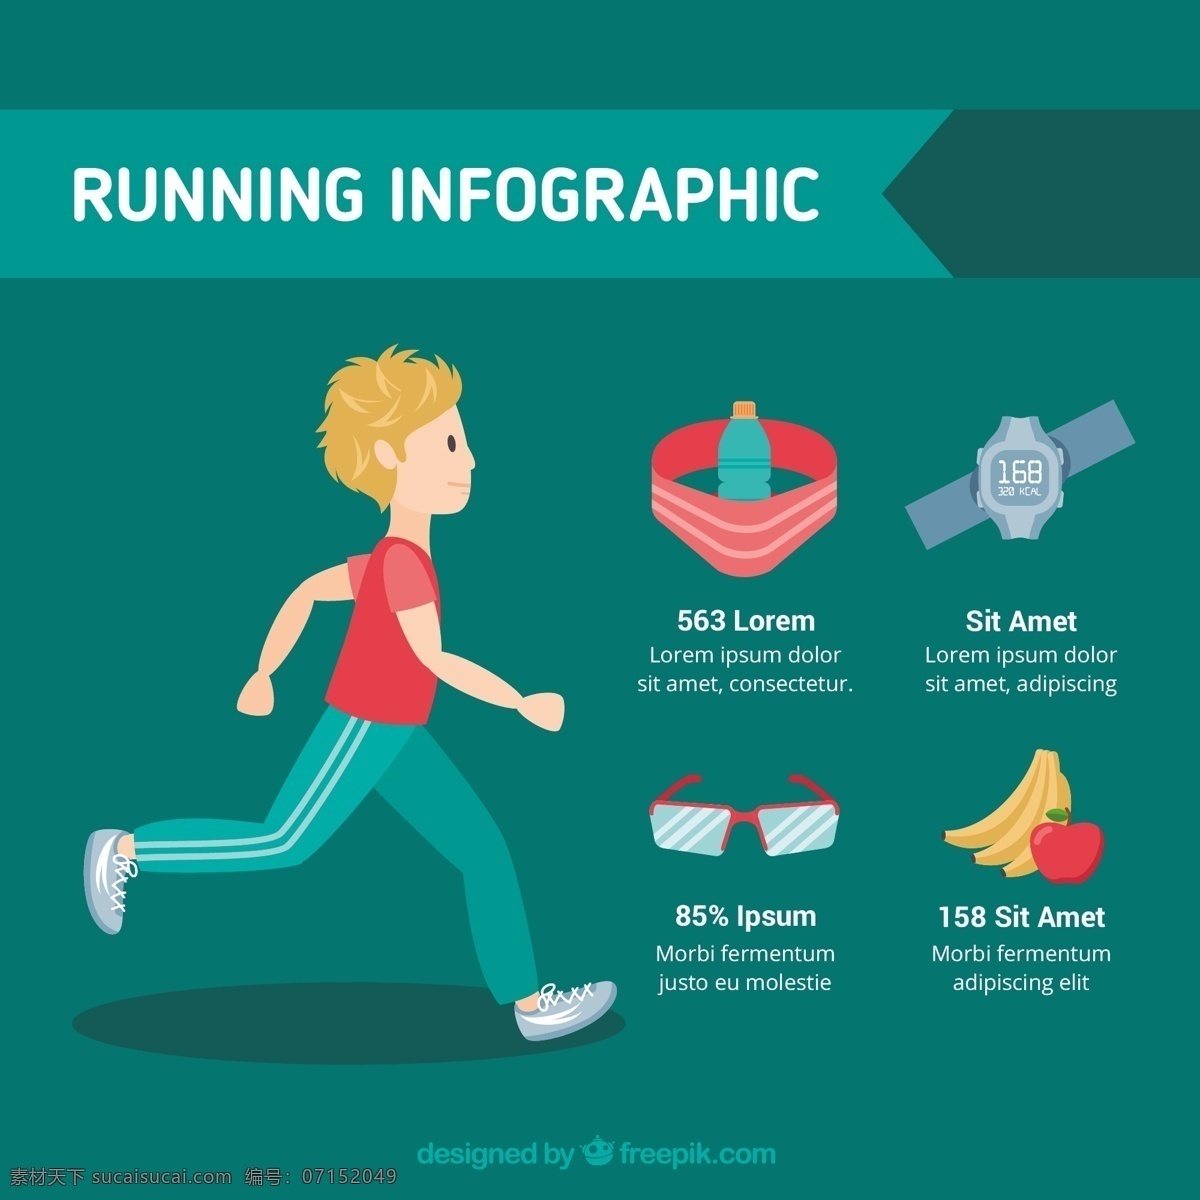 人 对象 运行 平台 信息 图表 模板 健康 运动 颜色 图形 体育 平坦 跑 过程中 信息图表模板 数据 健康信息